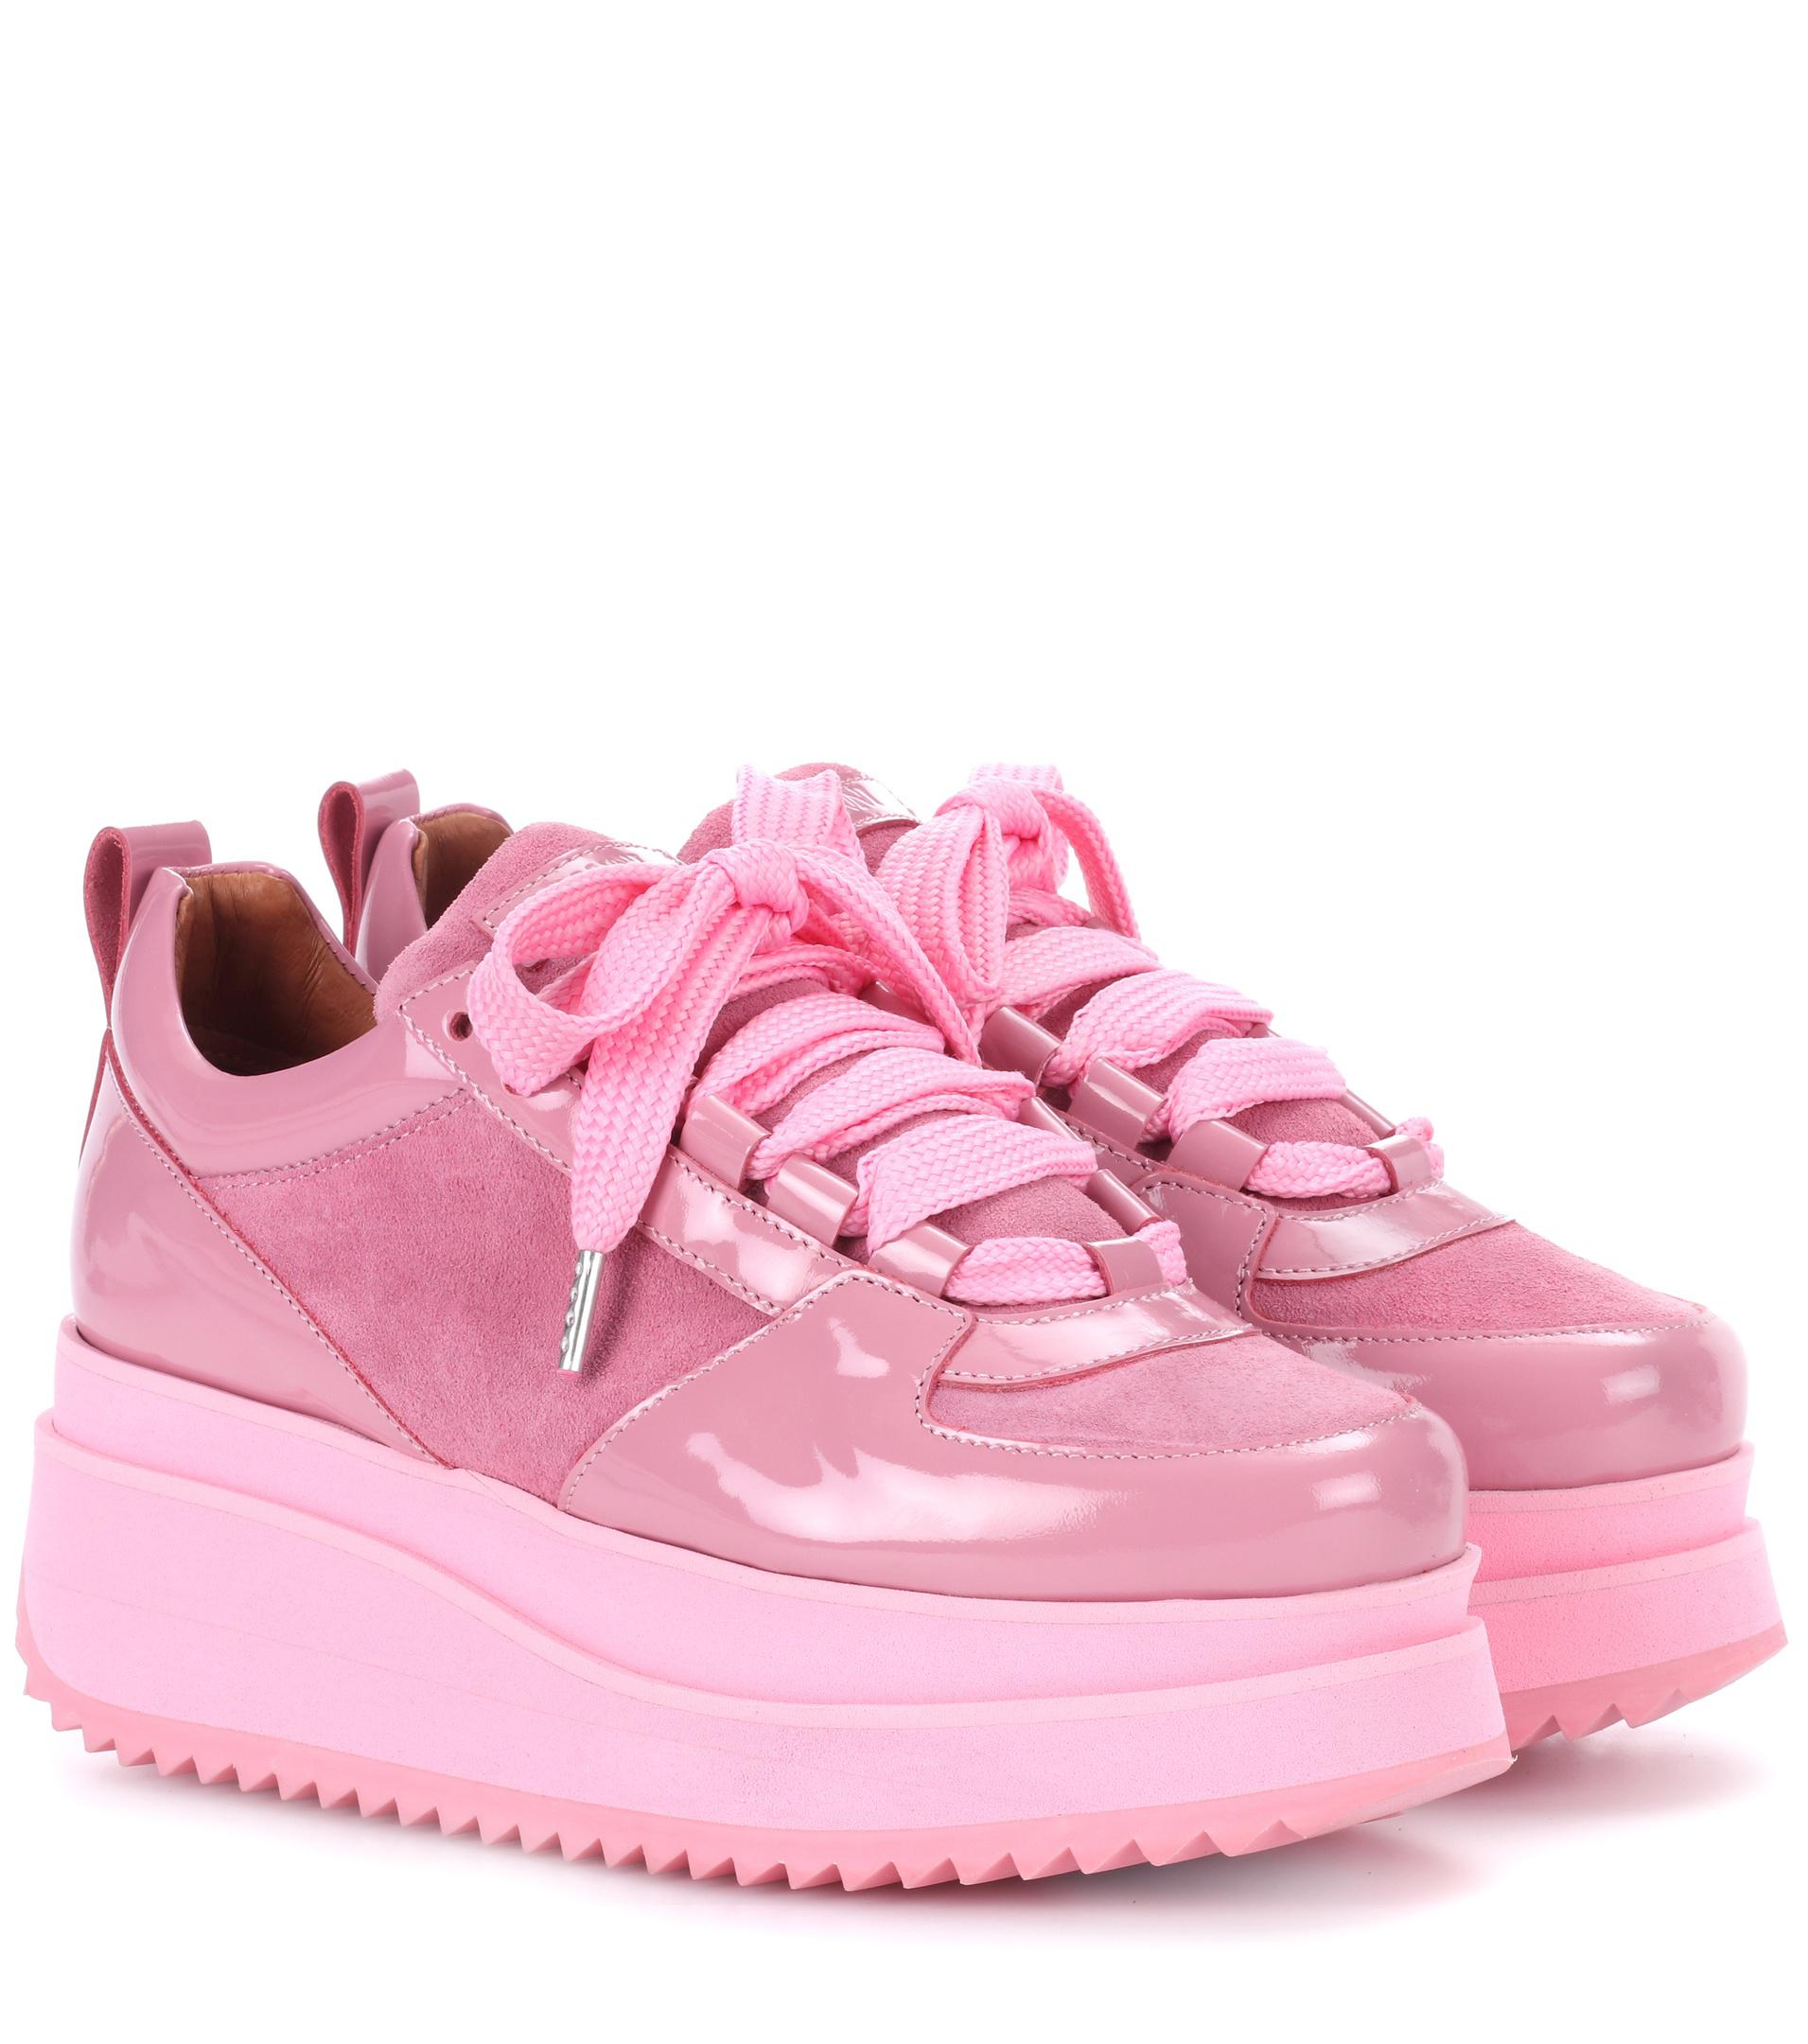 Suede platform Sneakers. Hugo Hybrid Sneakers розовые. Турецкие кроссовки с розовой подошвой.